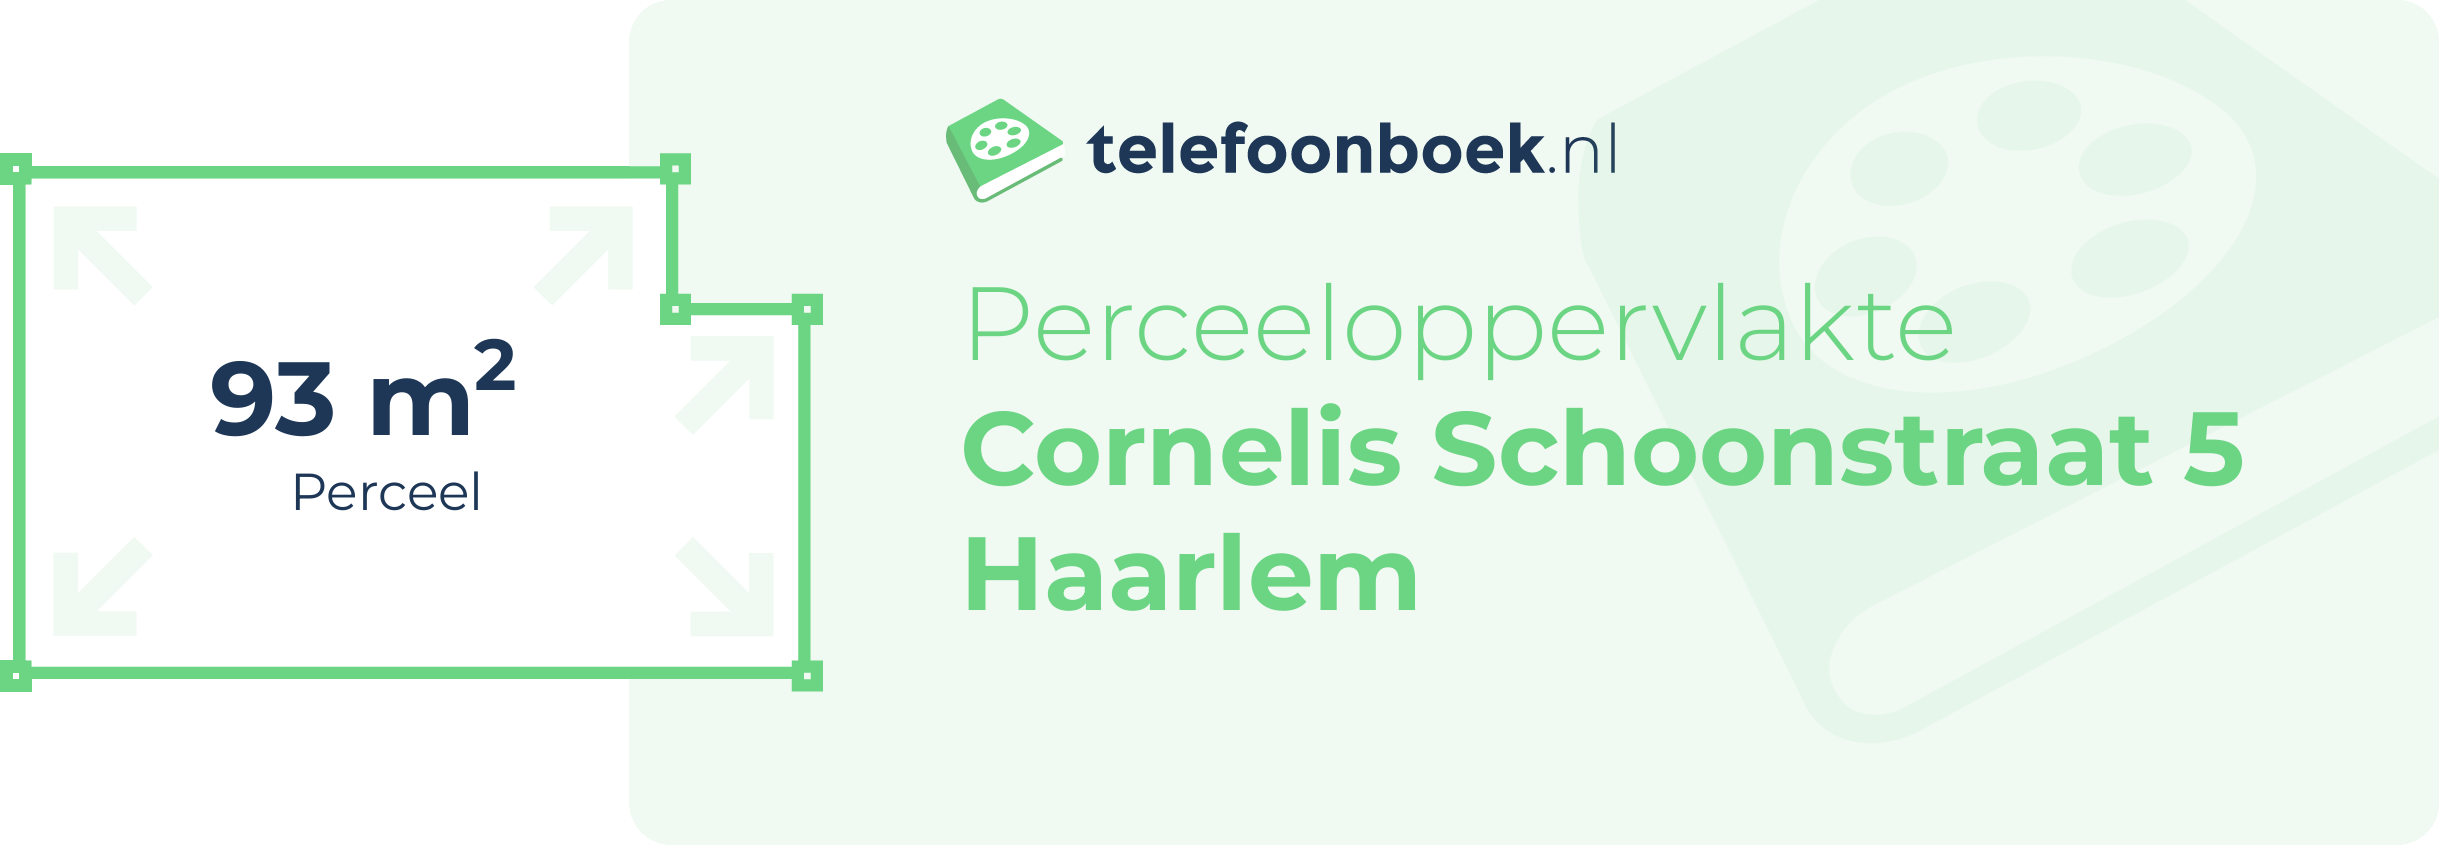 Perceeloppervlakte Cornelis Schoonstraat 5 Haarlem